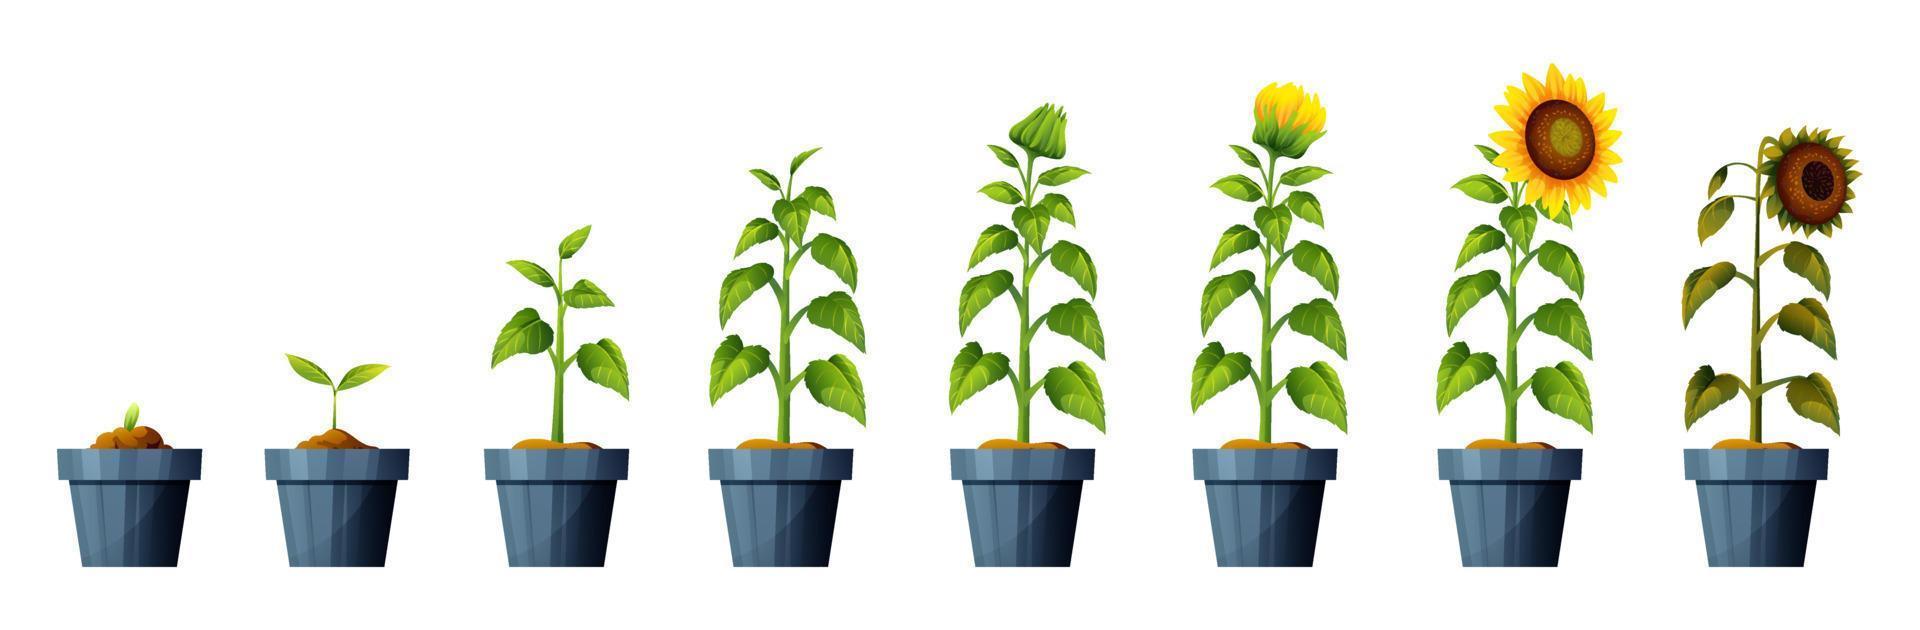 ilustración de las etapas de crecimiento y desarrollo de la planta de girasol. ciclo de vida del girasol vector